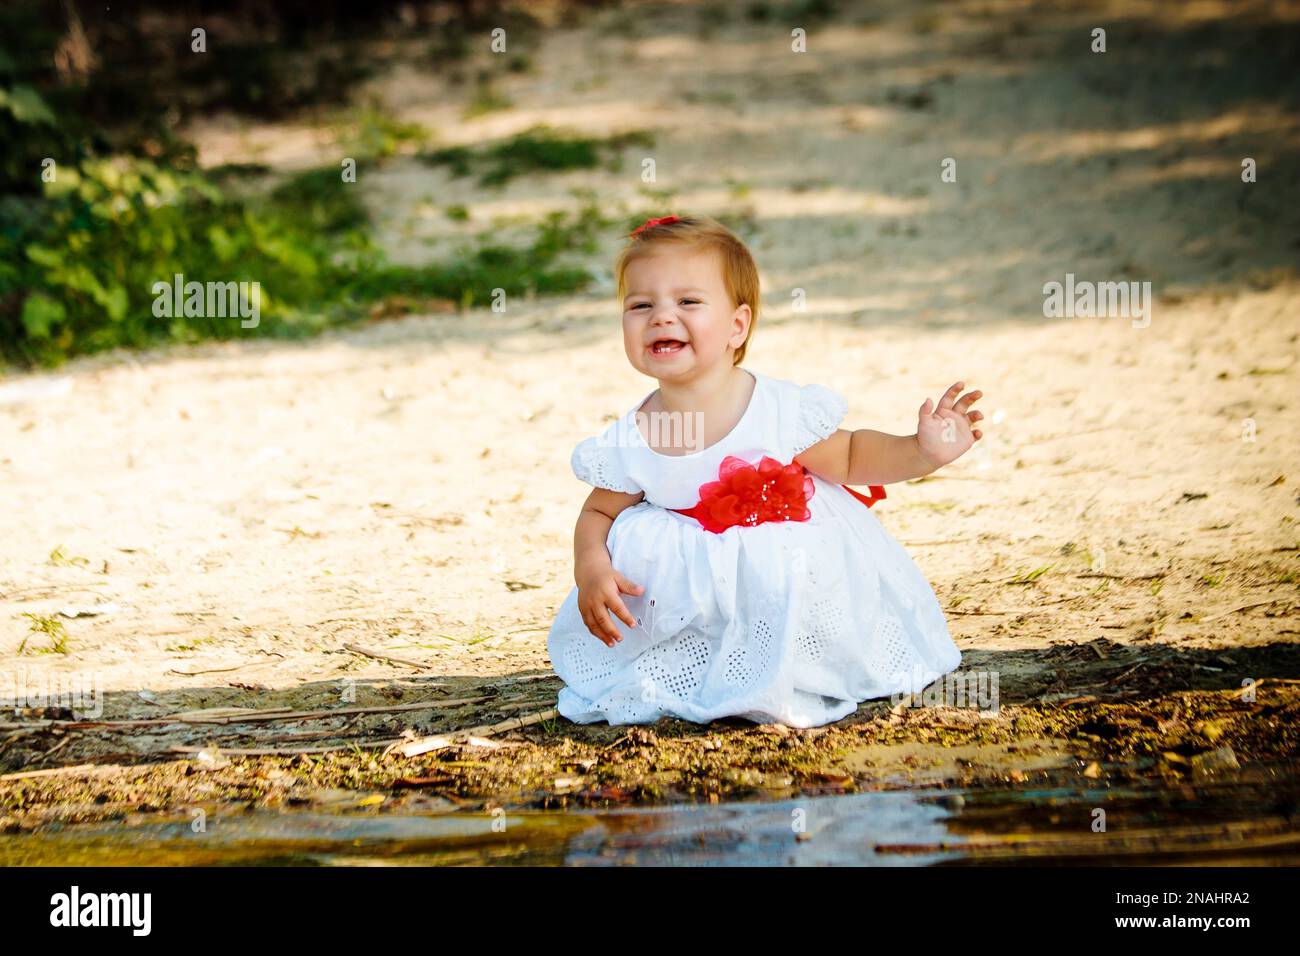 Das kleine Mädchen in einem weißen Kleid, das am Flussufer sitzt. Ein Kind, das in der Nähe des Wassers spielt. Der Junge lächelt. Das Kind grimmig und schloss seine Augen. Stockfoto